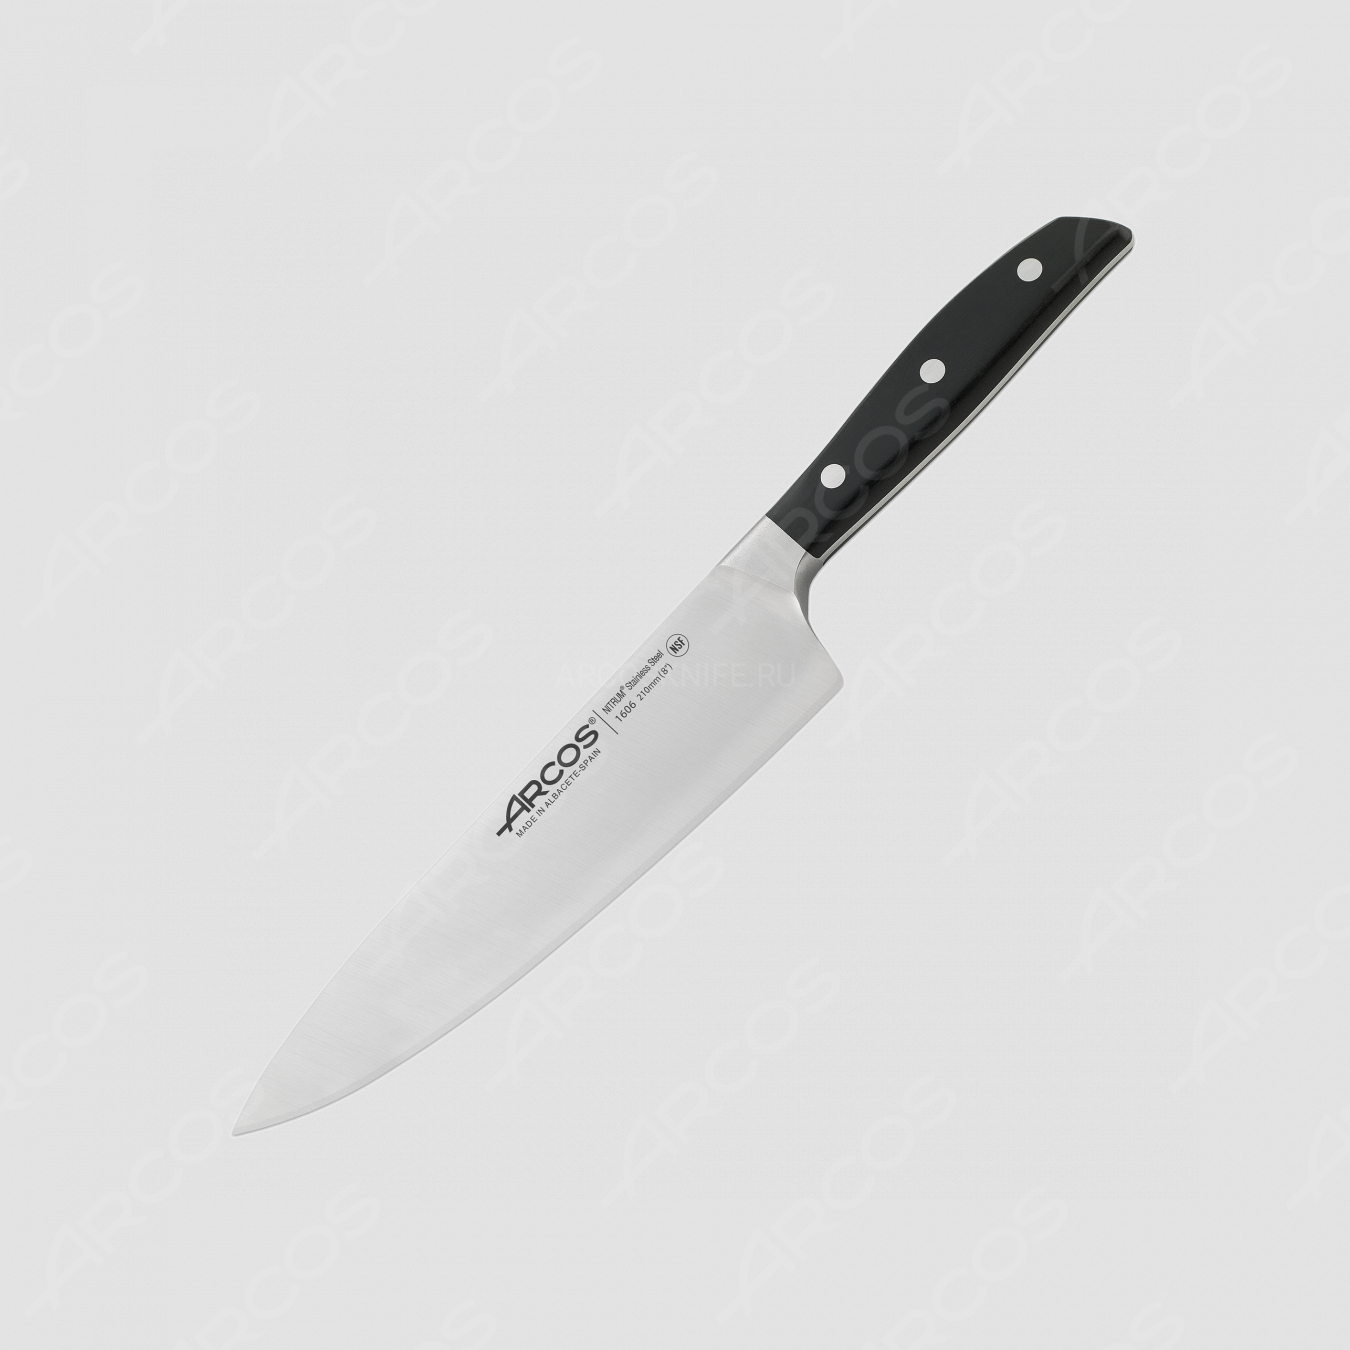 Профессиональный поварской кухонный нож 21 см, серия Manhattan, ARCOS, Испания